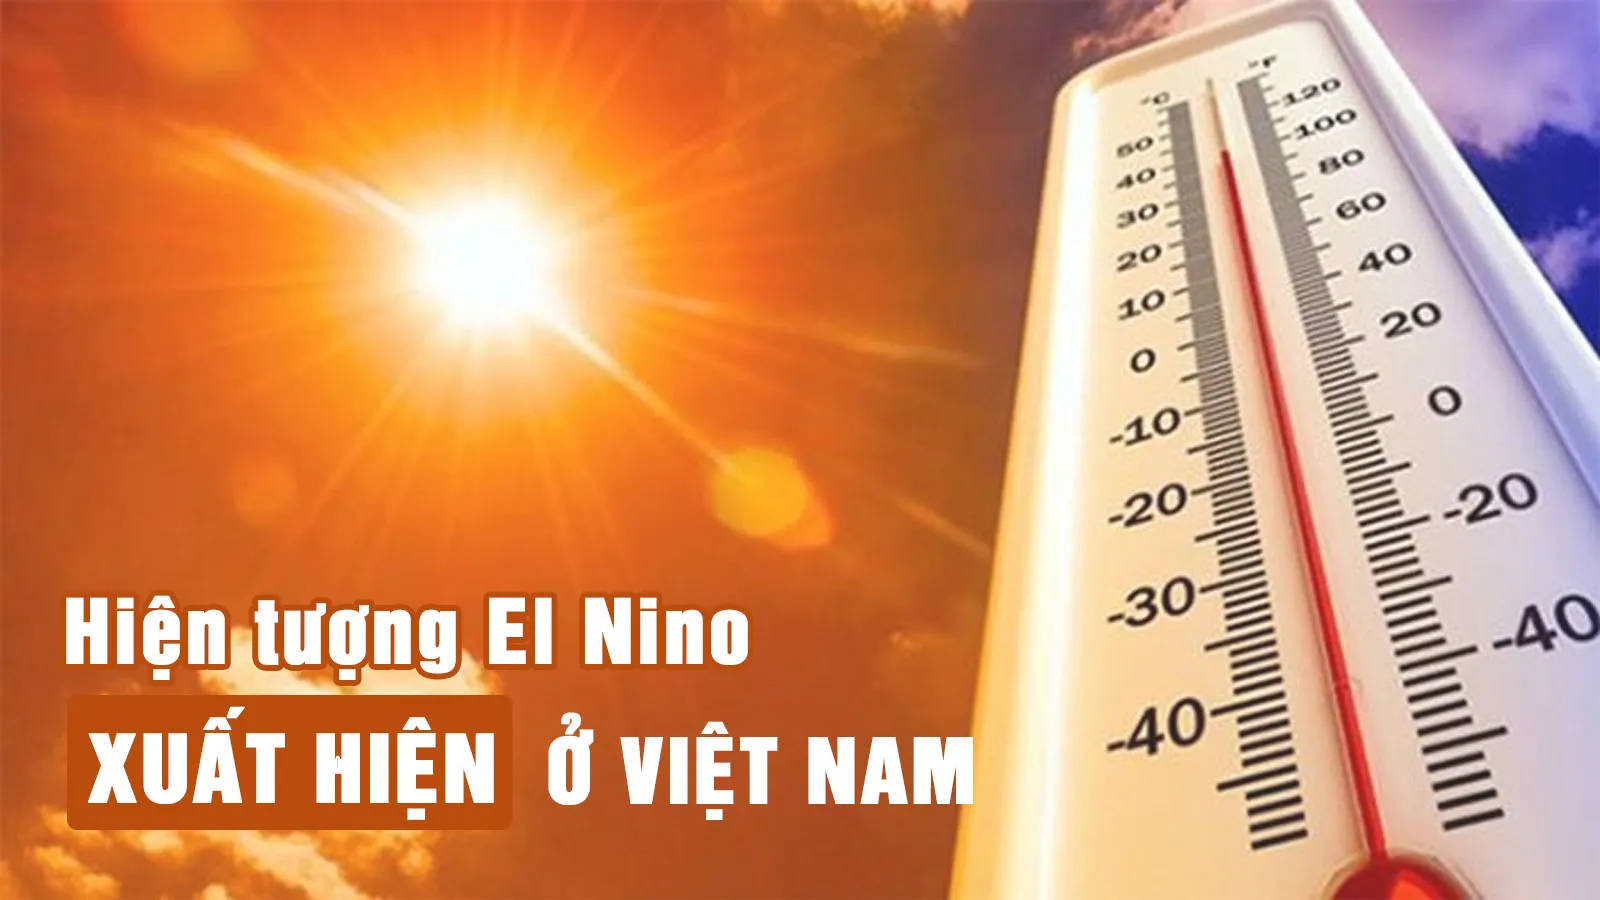 El Nino có thể sẽ xuất hiện ở Việt Nam từ cuối tháng 5